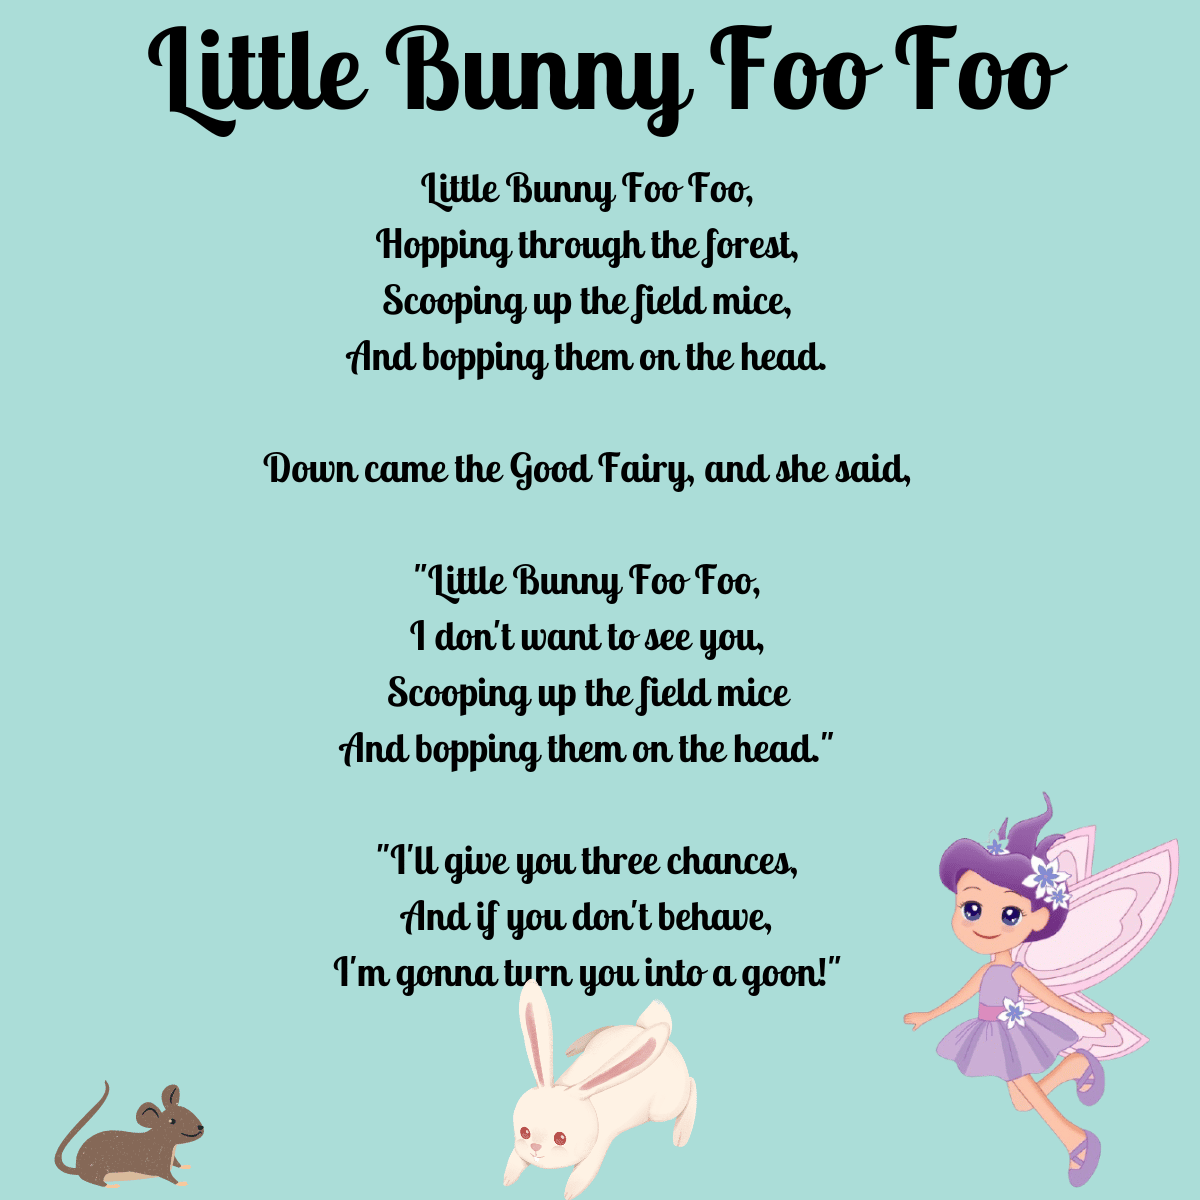 Little Bunny Foo Foo lyrics